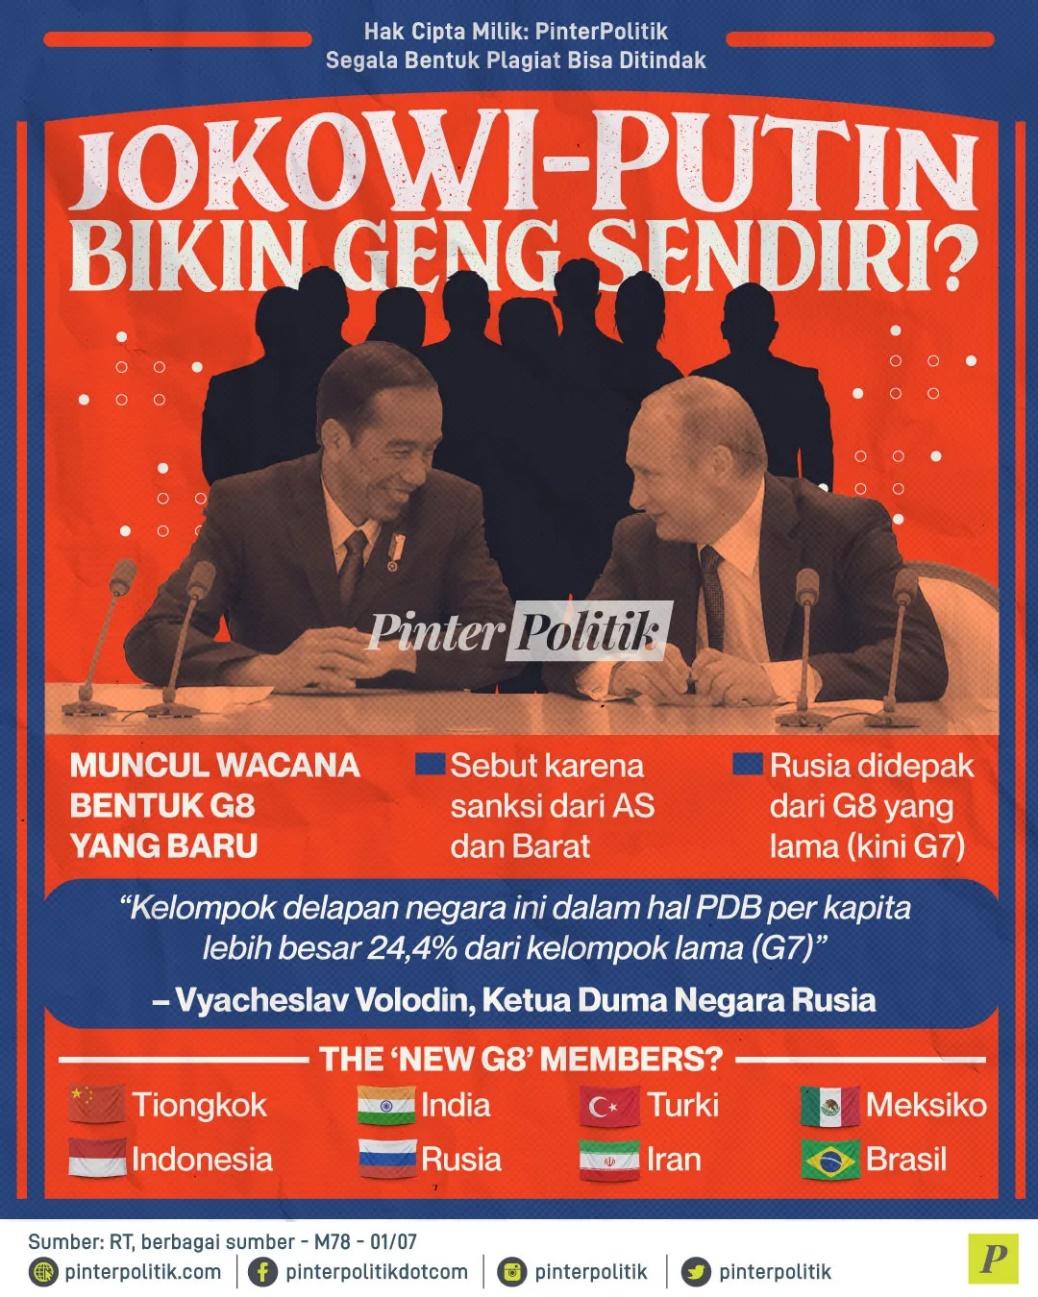 Jokowi Putin Bikin Geng G8 Sendiri